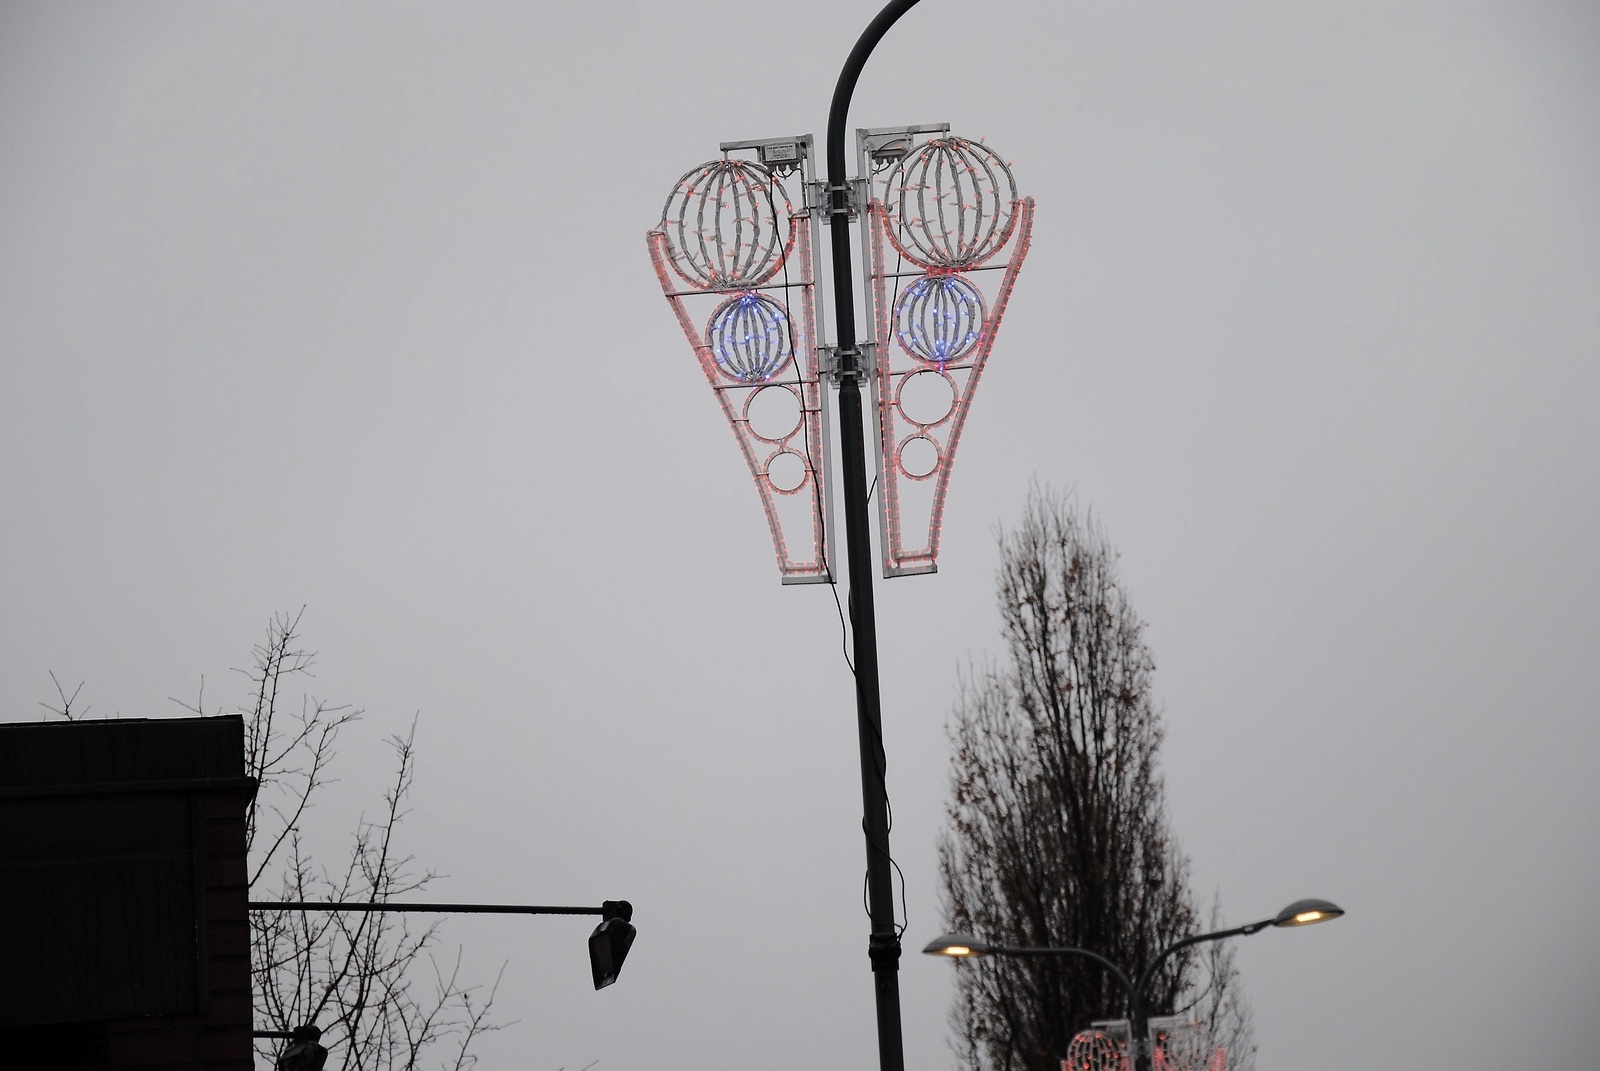 Cronos heter dekorationen vid Järnvägsgatan, som är ny för i år.   Foto: Stefan Olofson